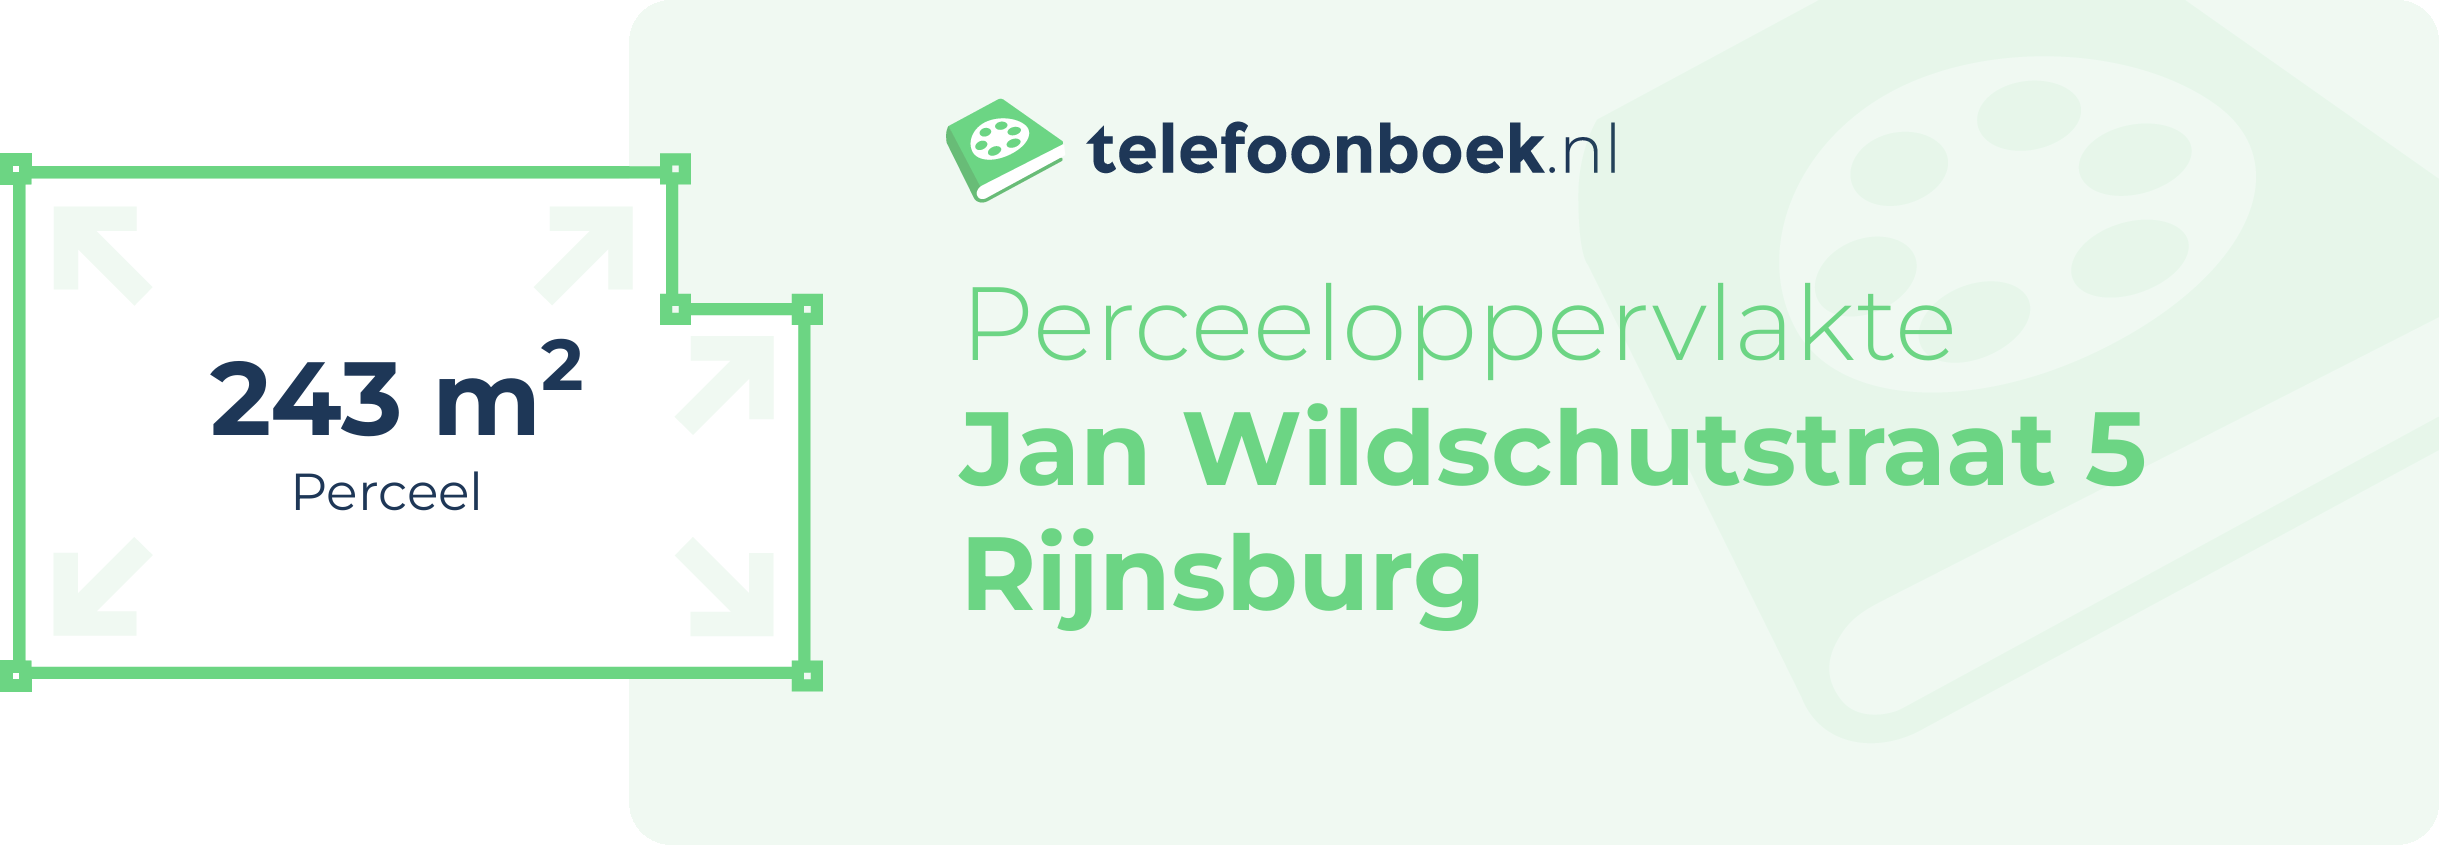 Perceeloppervlakte Jan Wildschutstraat 5 Rijnsburg